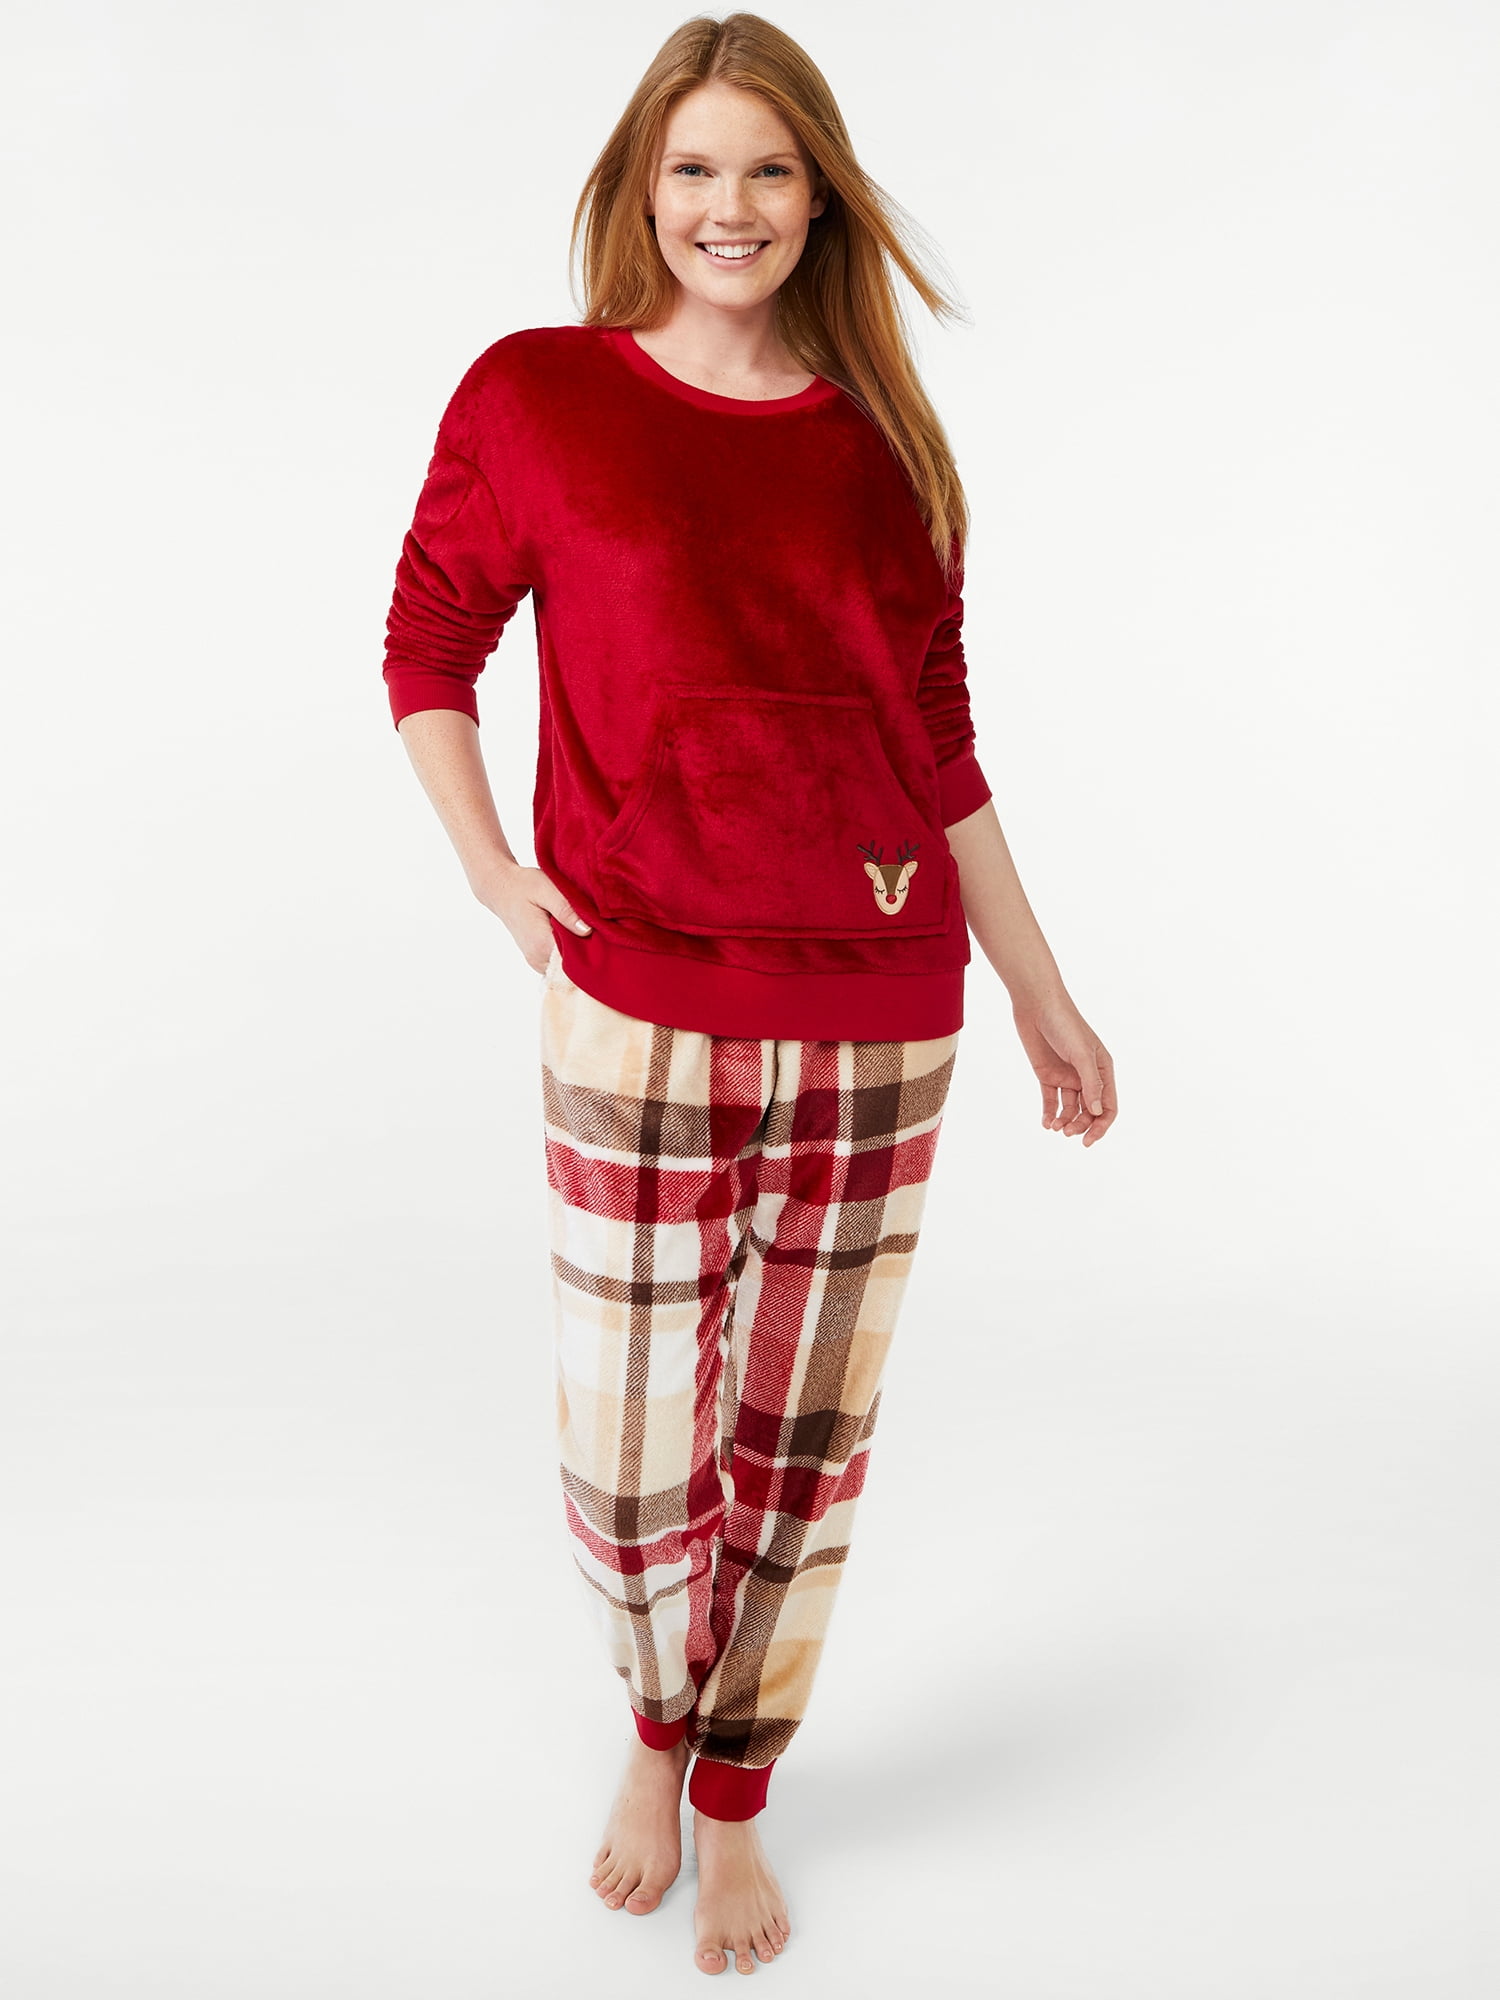 Joyspun Women's Plush Long Sleeve Top and Pants Pajama Set, 2-Piece, Sizes XS to 3X